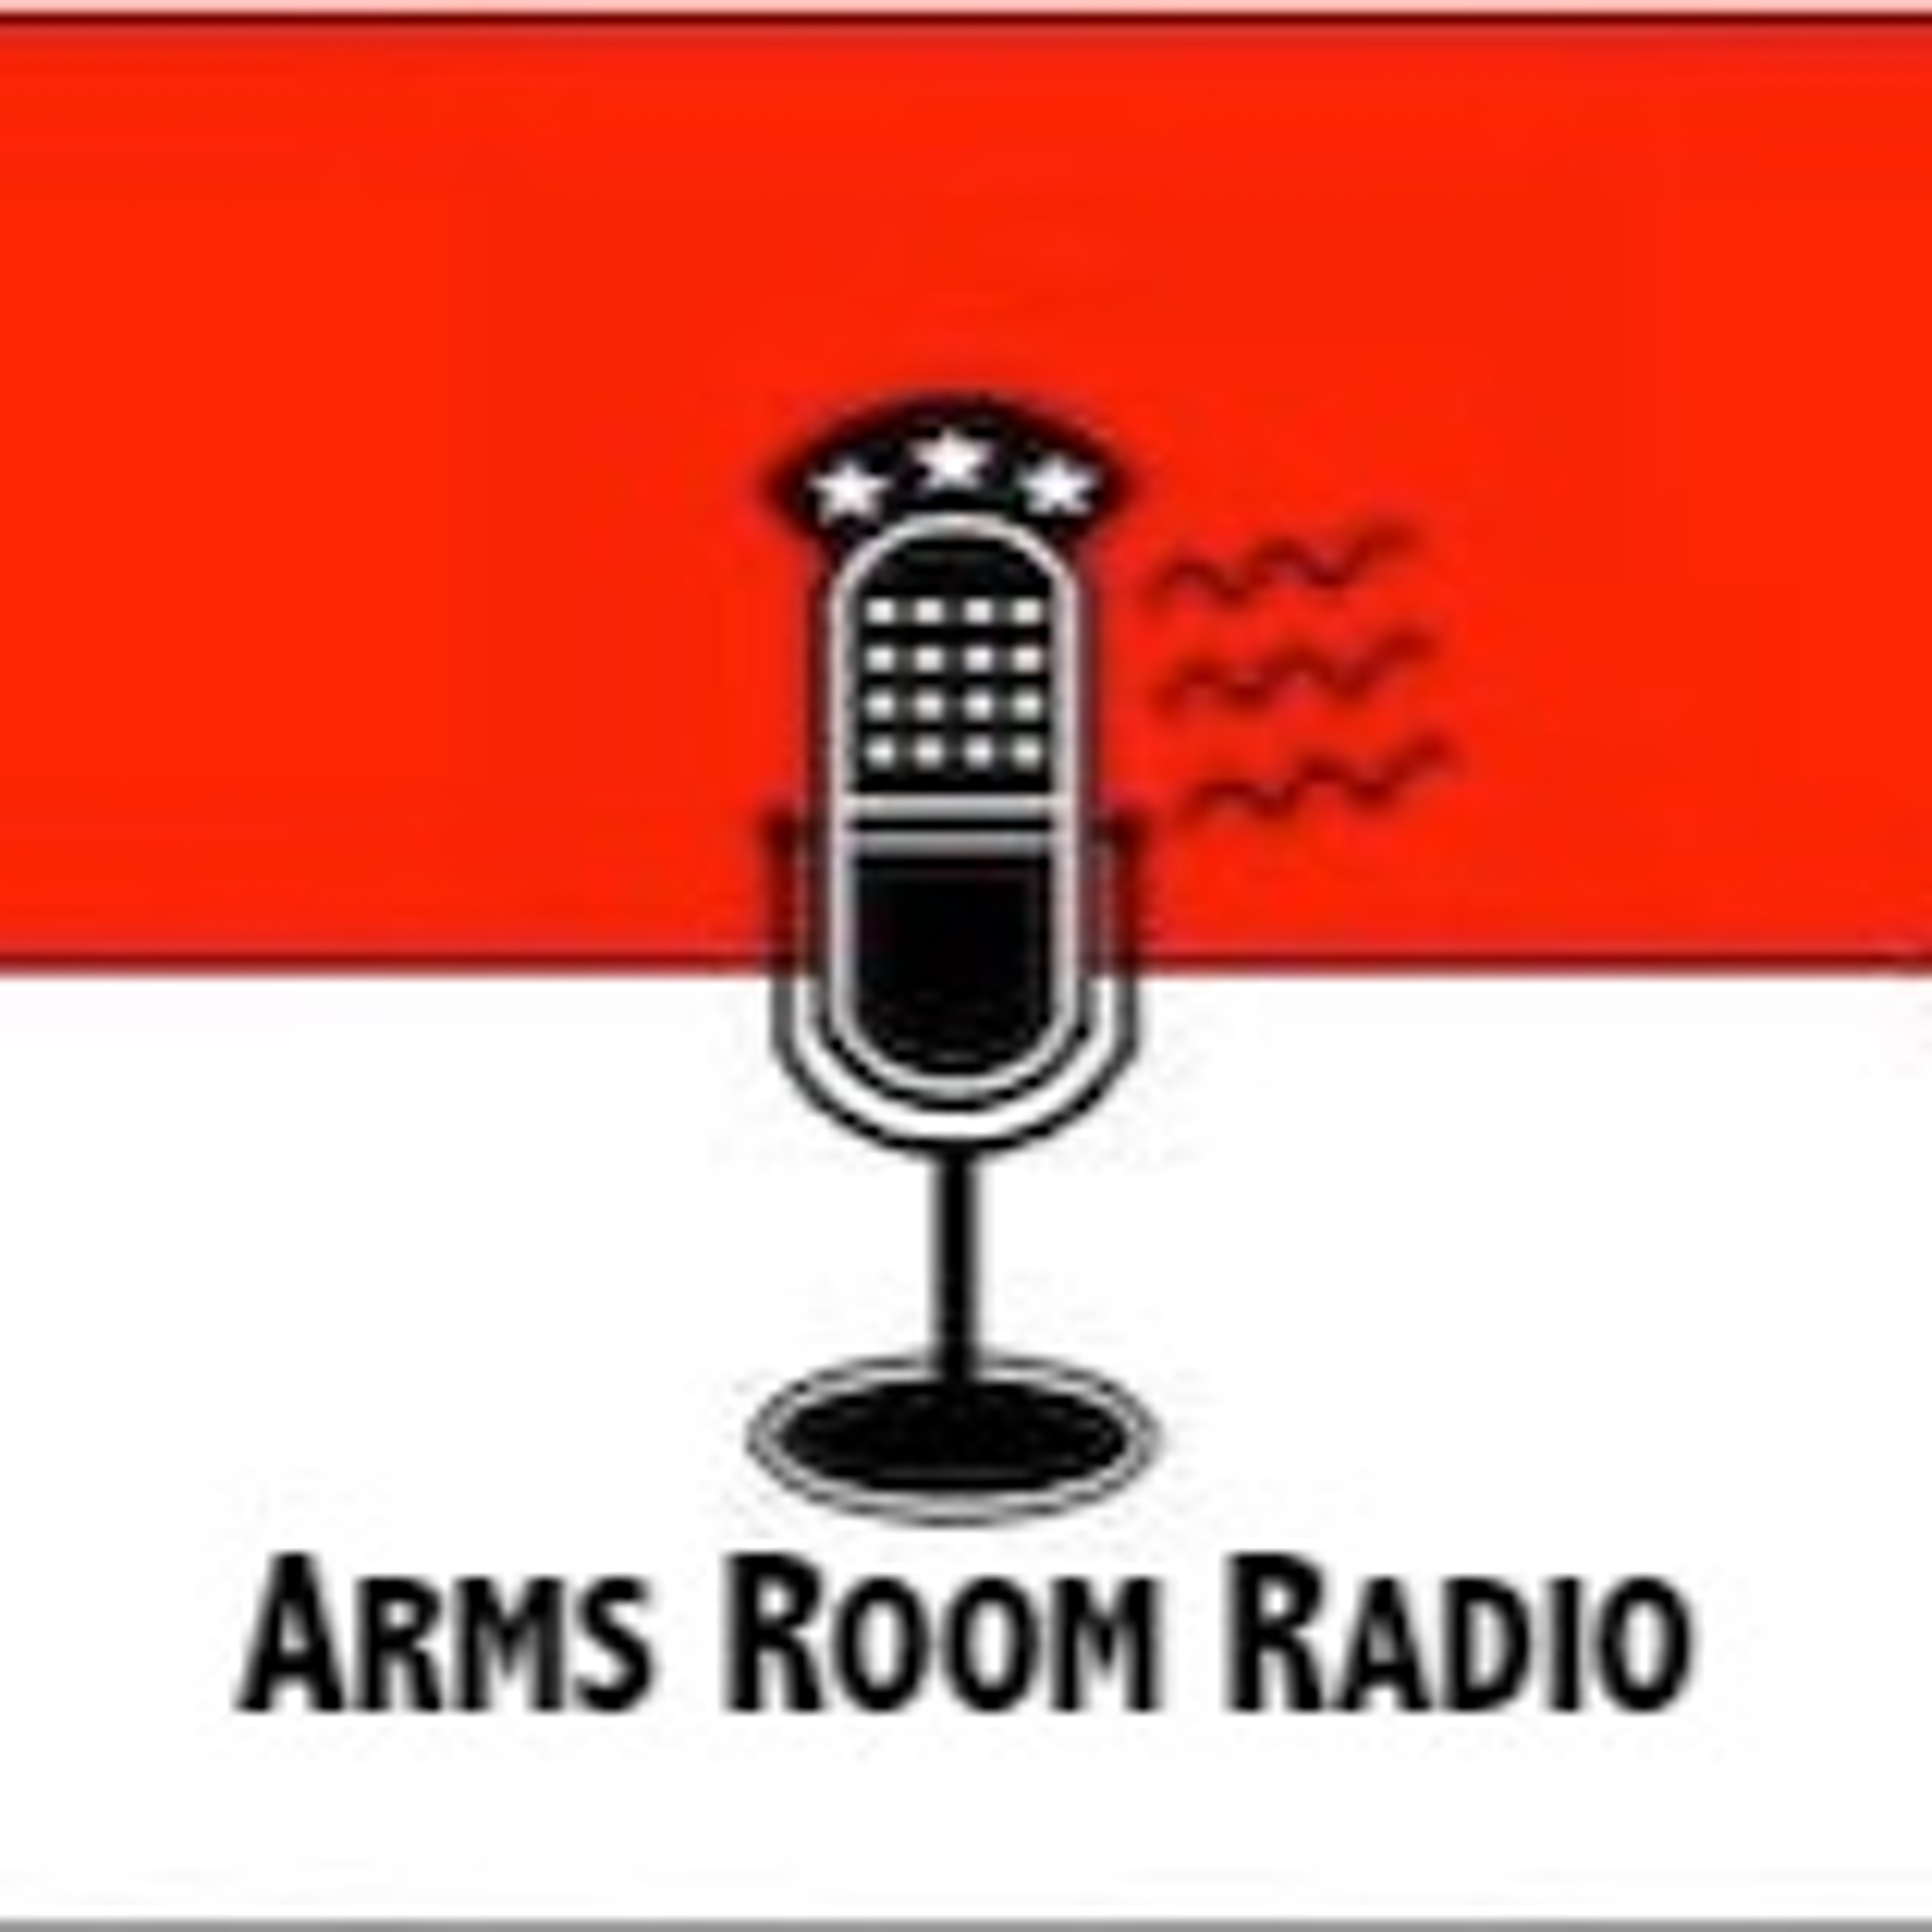 ArmsRoomRadio 03.20.21 Craig DeLuz, and Dr. John Edeen